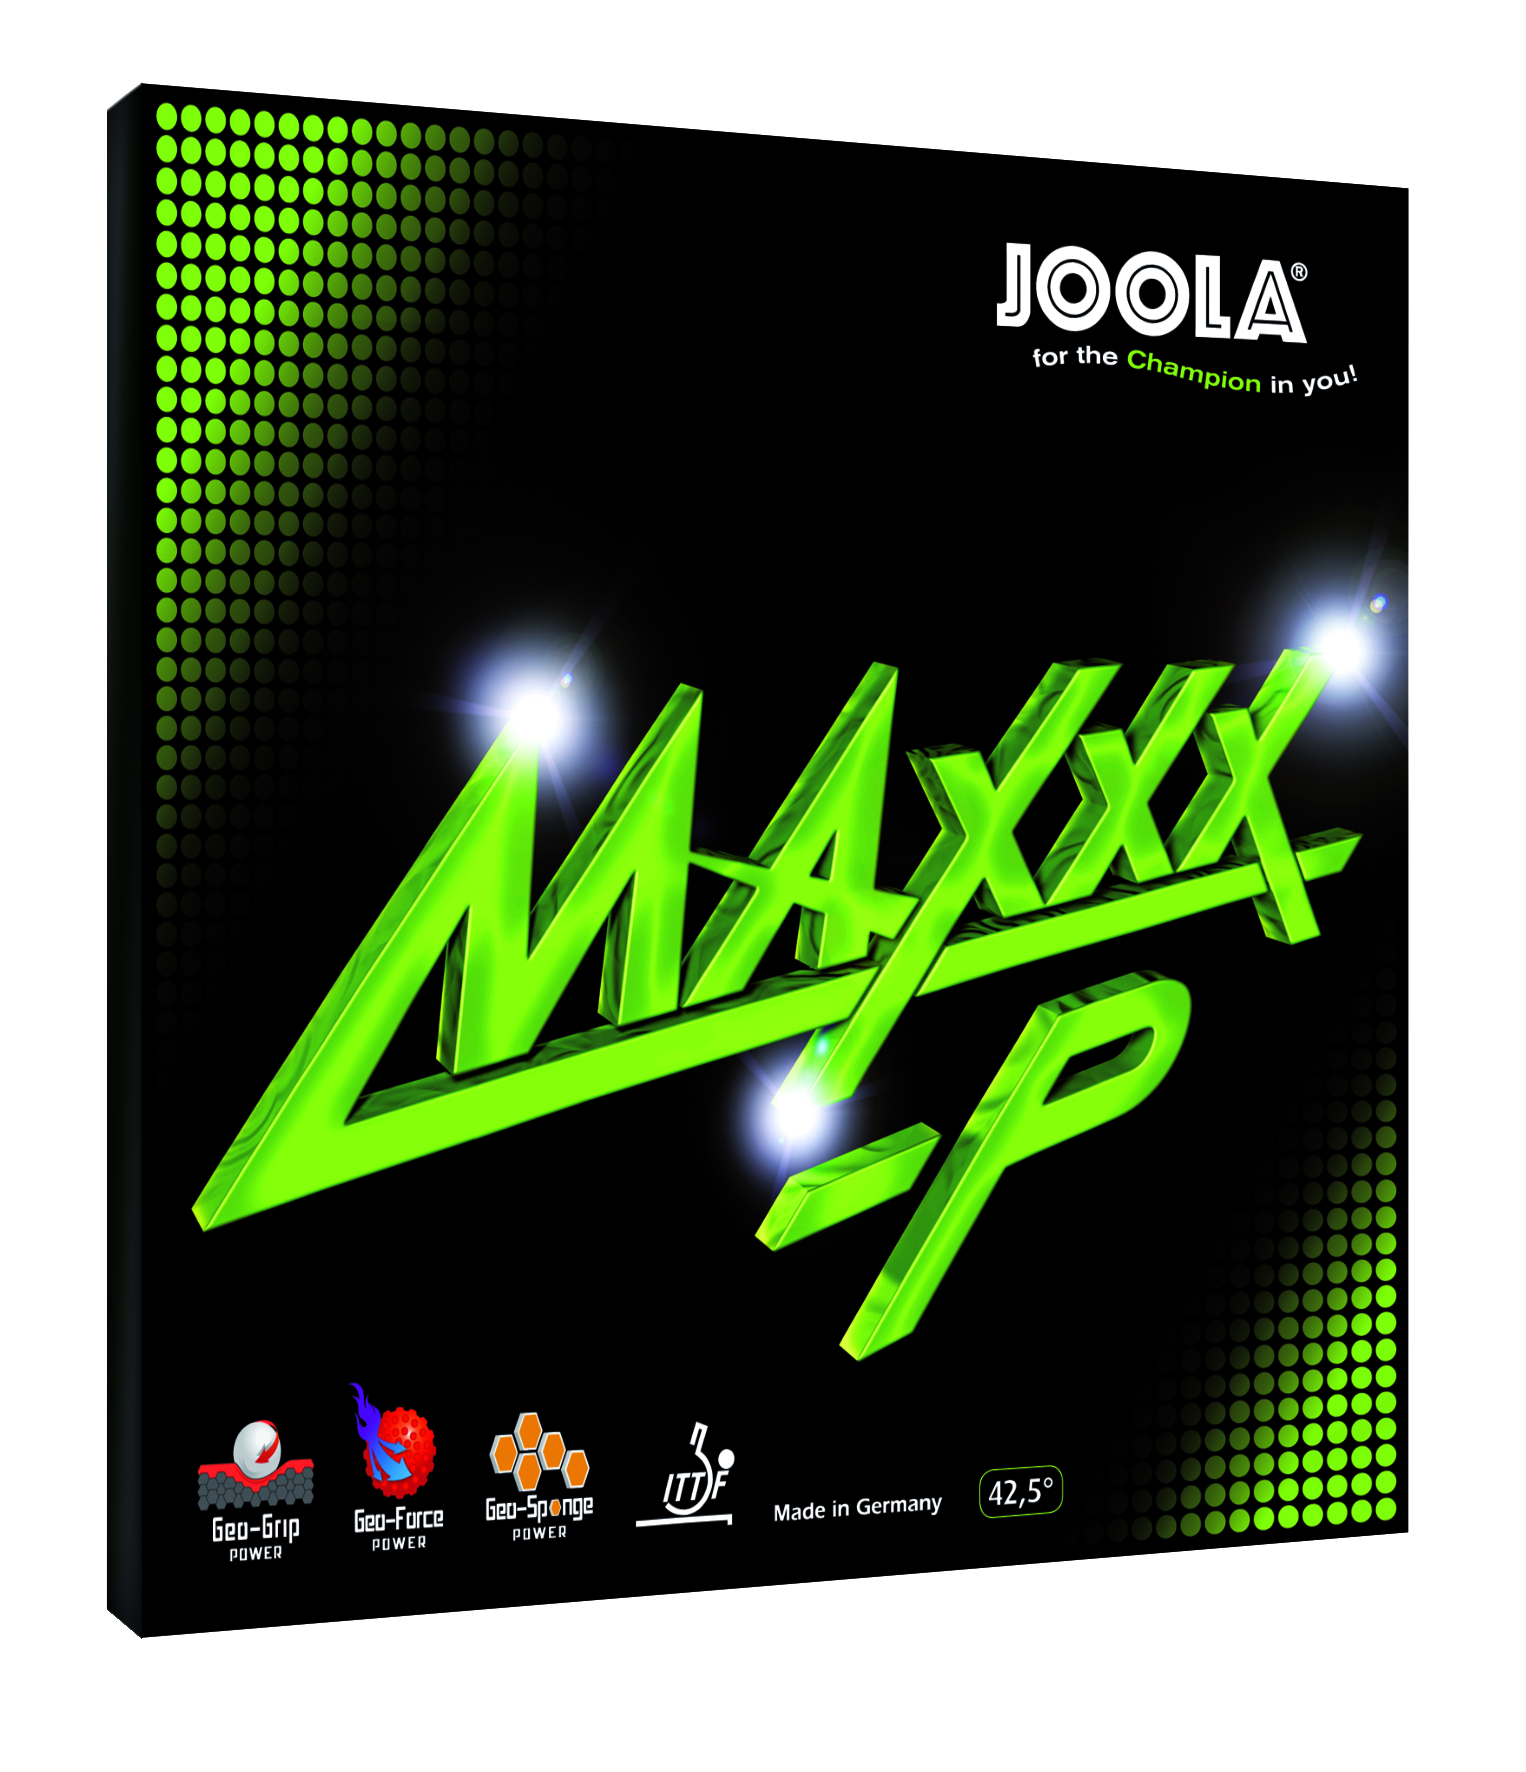 Joola Maxxx P - Tischtennis Belag von Joola